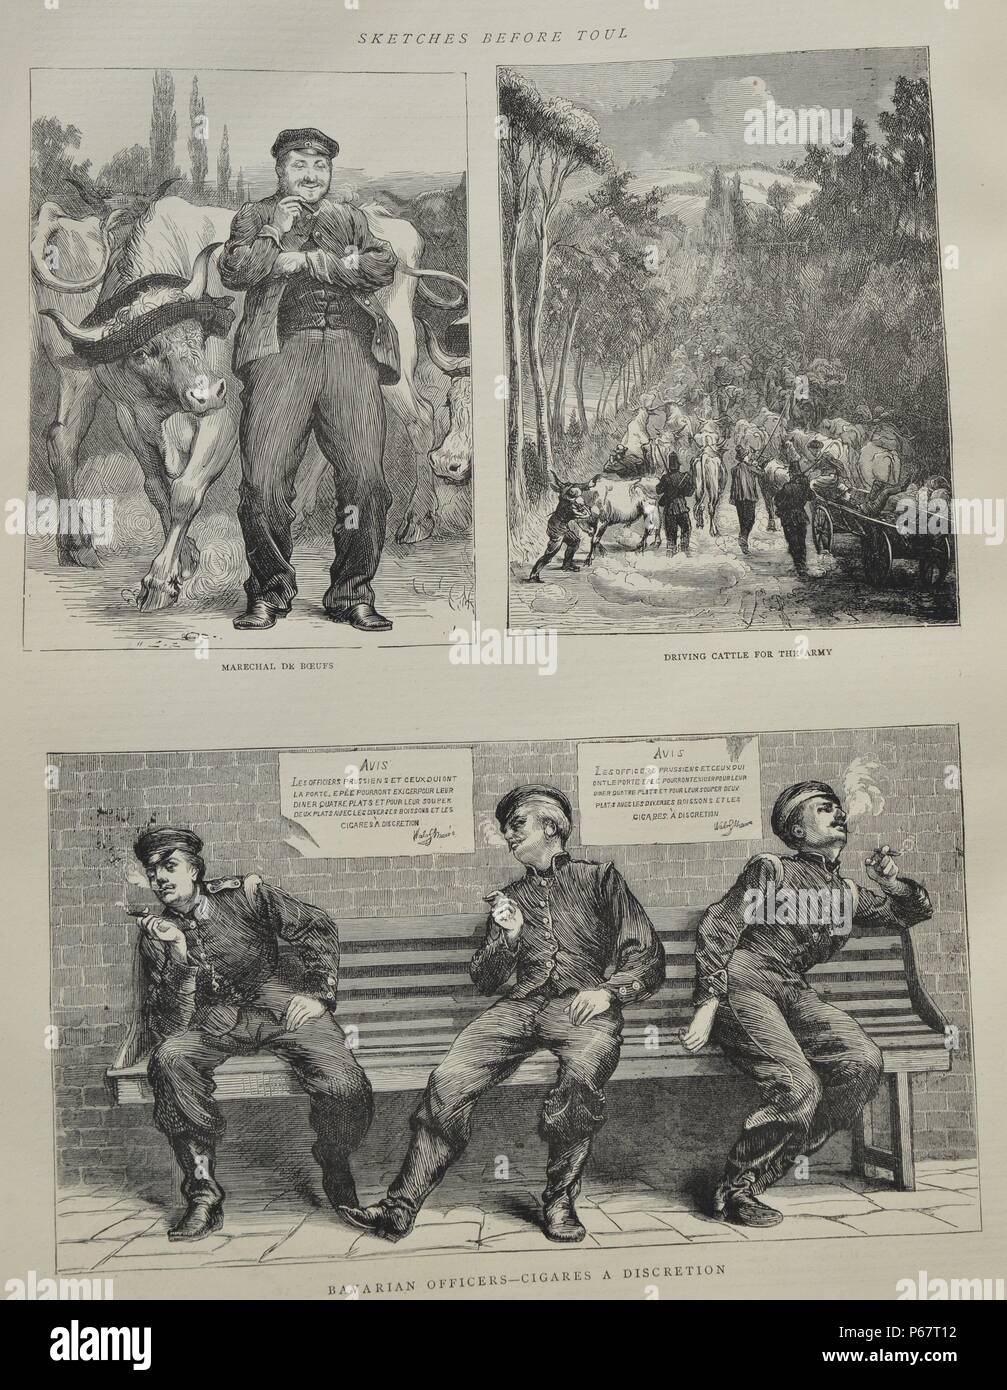 Collection de dessins : Maréchal de Bœufs, de conduire le bétail pour l'armée et les officiers bavarois - Cigares a discrétion. Datée 1870 Banque D'Images